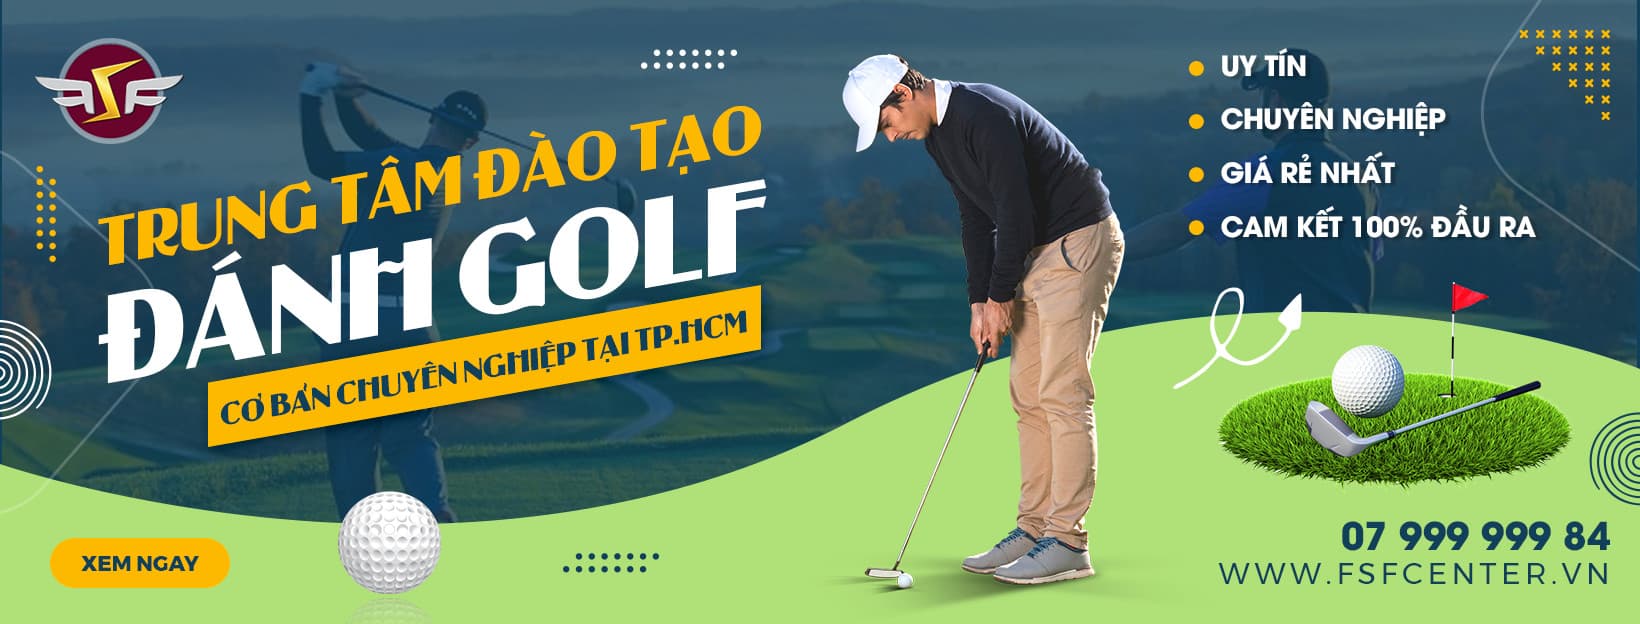 Trung tâm đào tạo khóa dạy học chơi đánh golf cơ bản chuyên nghiệp tại tphcm